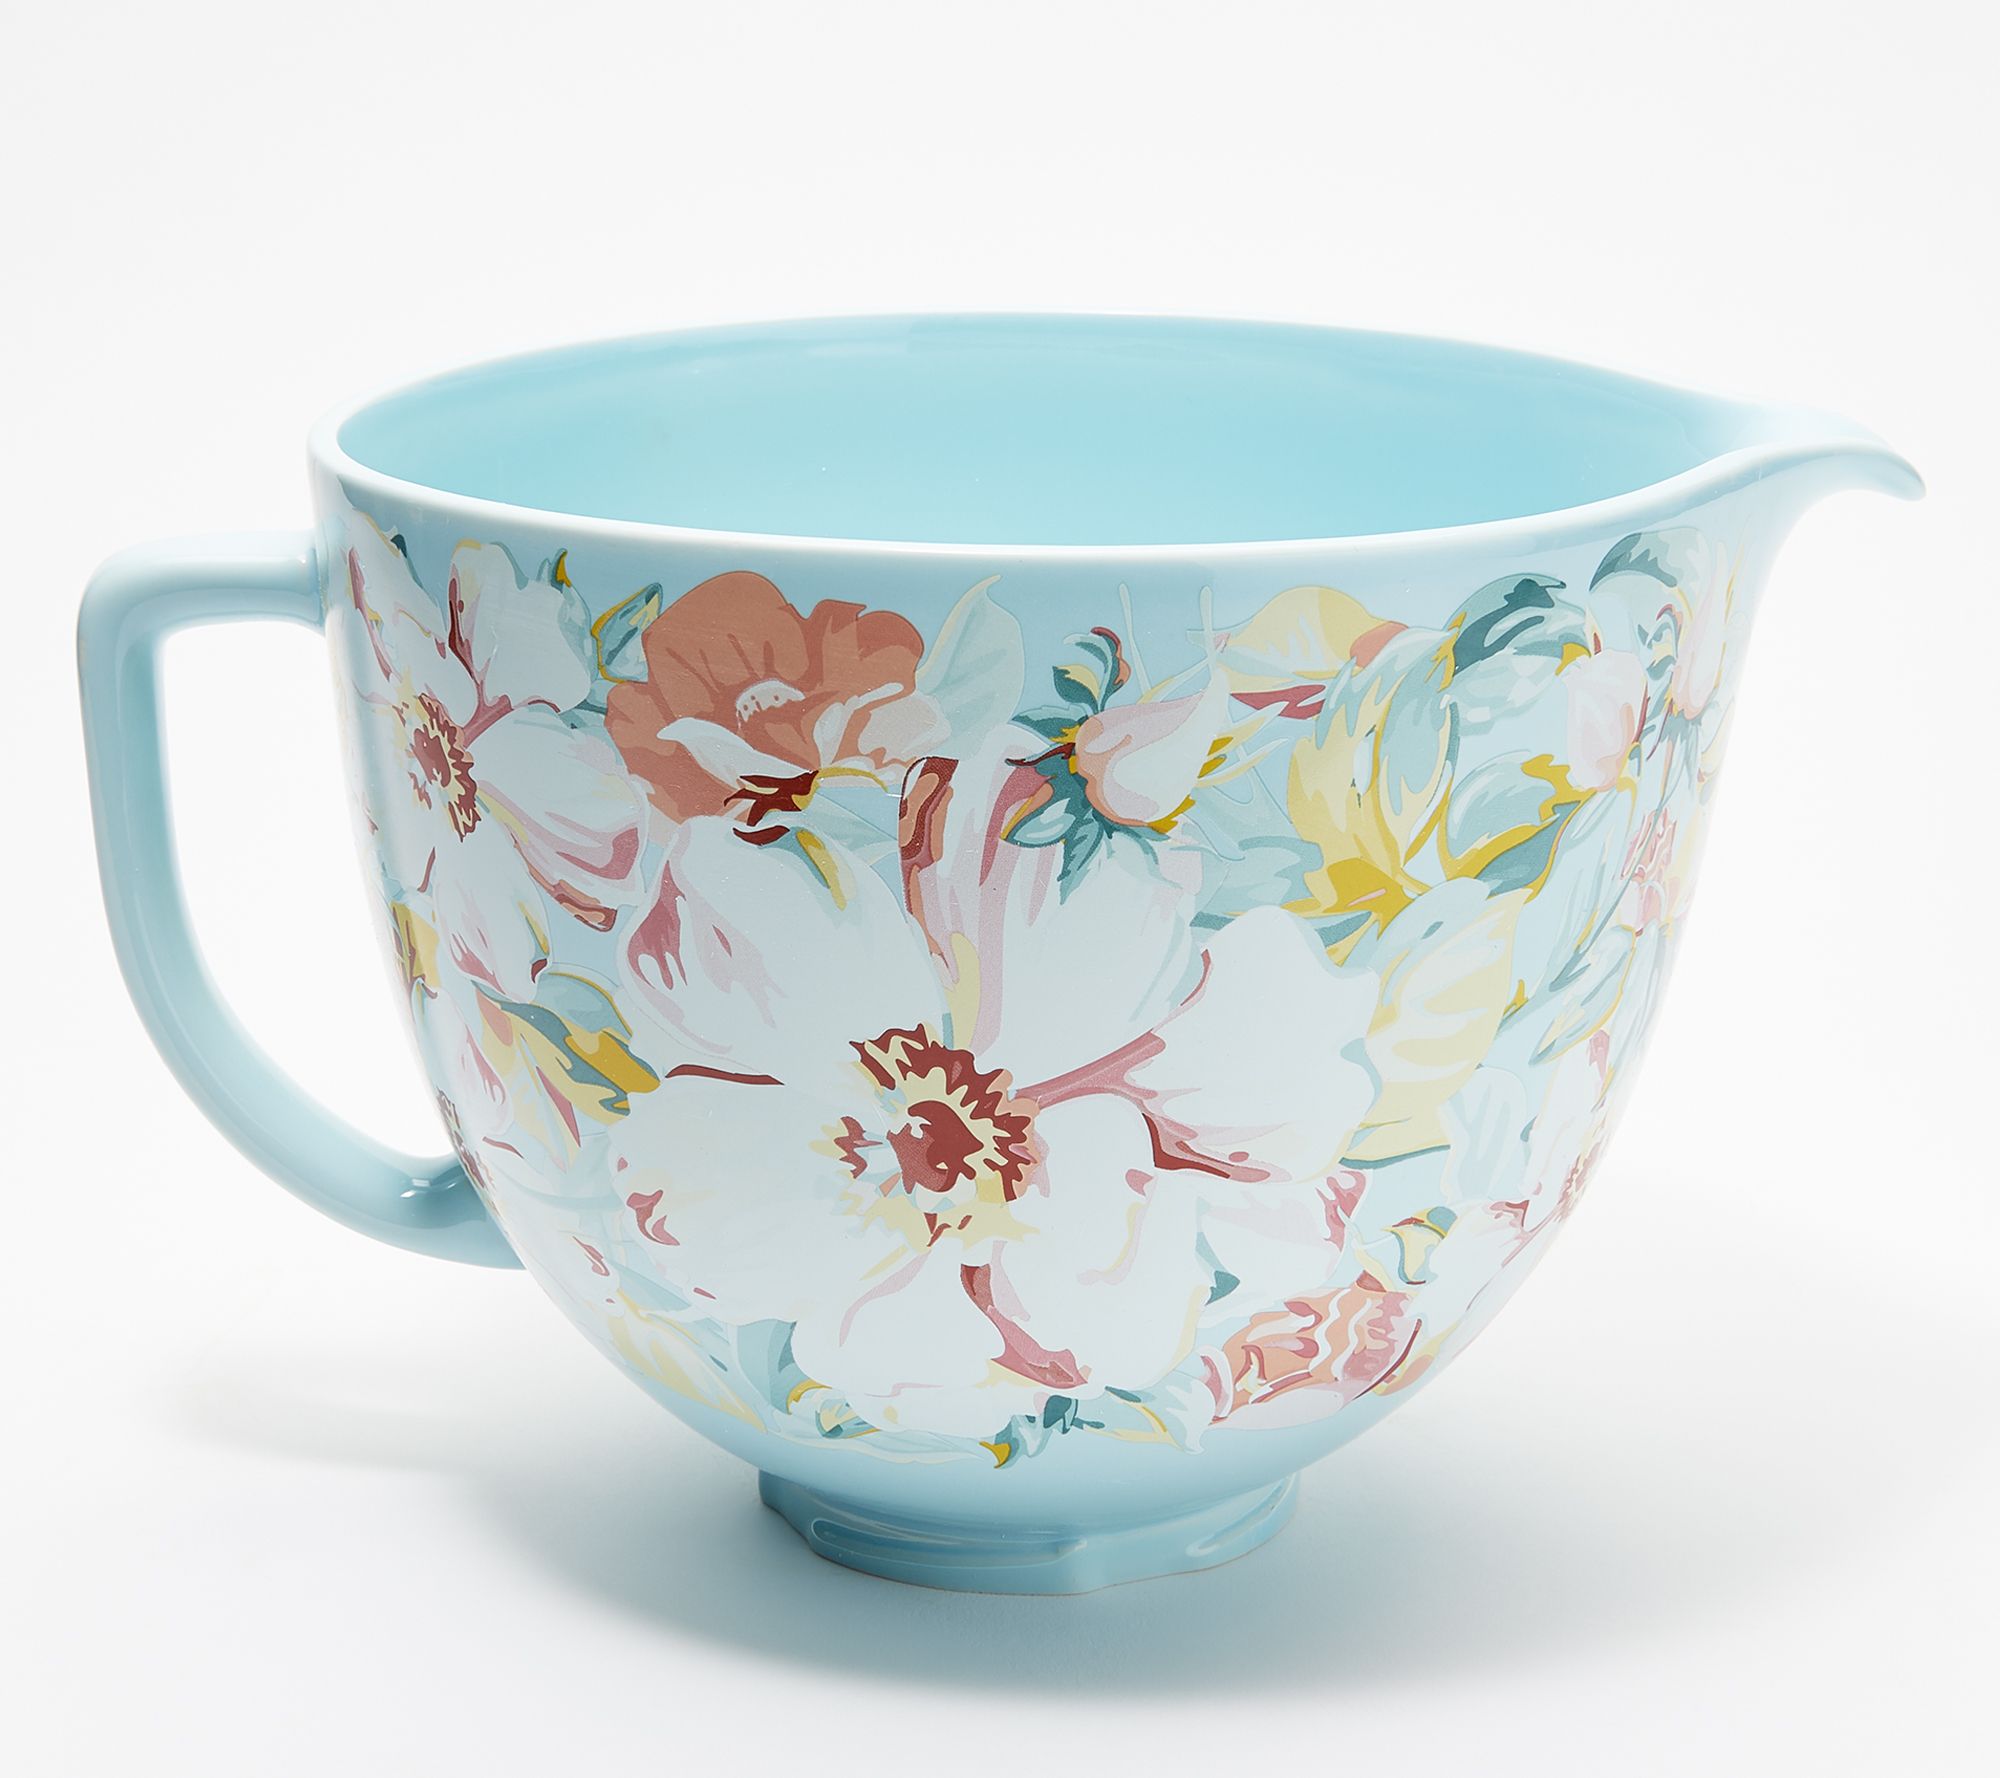 KitchenAid Patterned Ceramic Bowl - White/Blue, 5 qt - Kroger